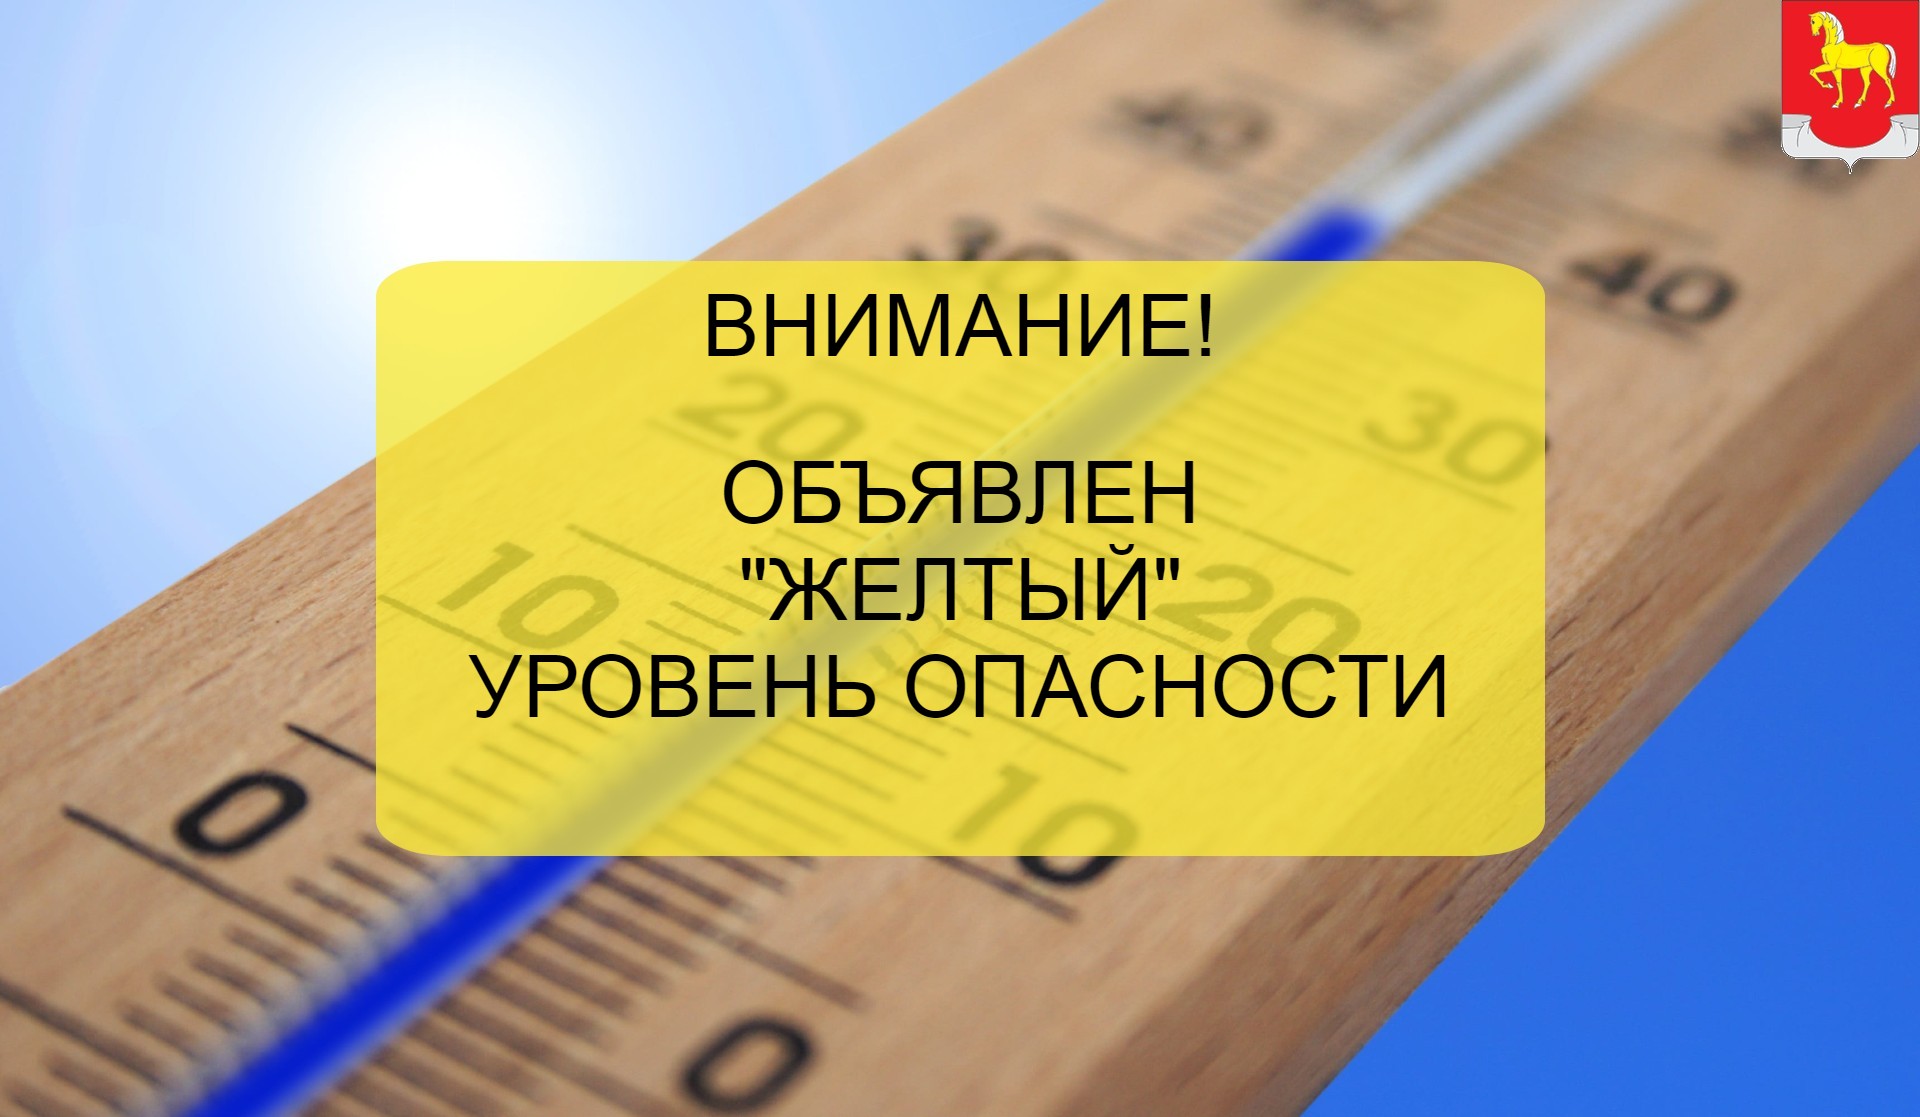 Объявляется «желтый» уровень опасности на территории Ульяновской области!.